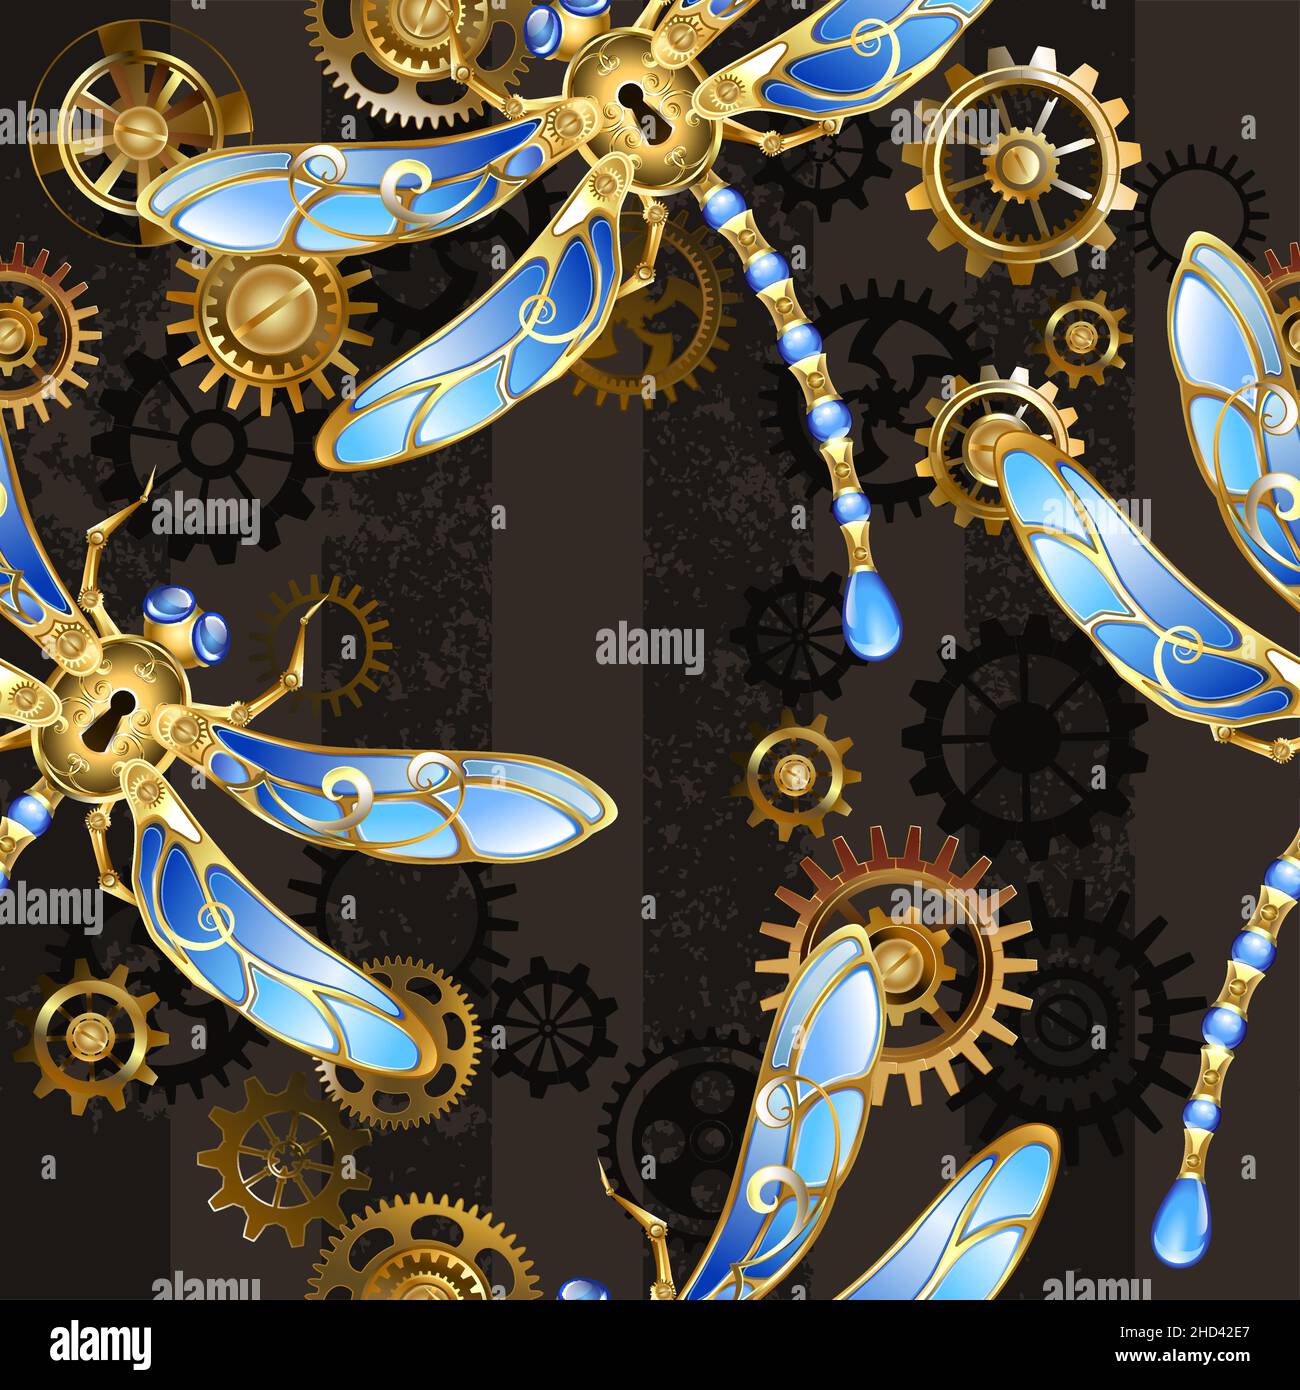 Texture sans couture avec des libellules mécaniques dorées, décorées avec des ailes de verre bleues avec des pignons en or et en laiton sur un backgro rayé, texturé, marron Illustration de Vecteur